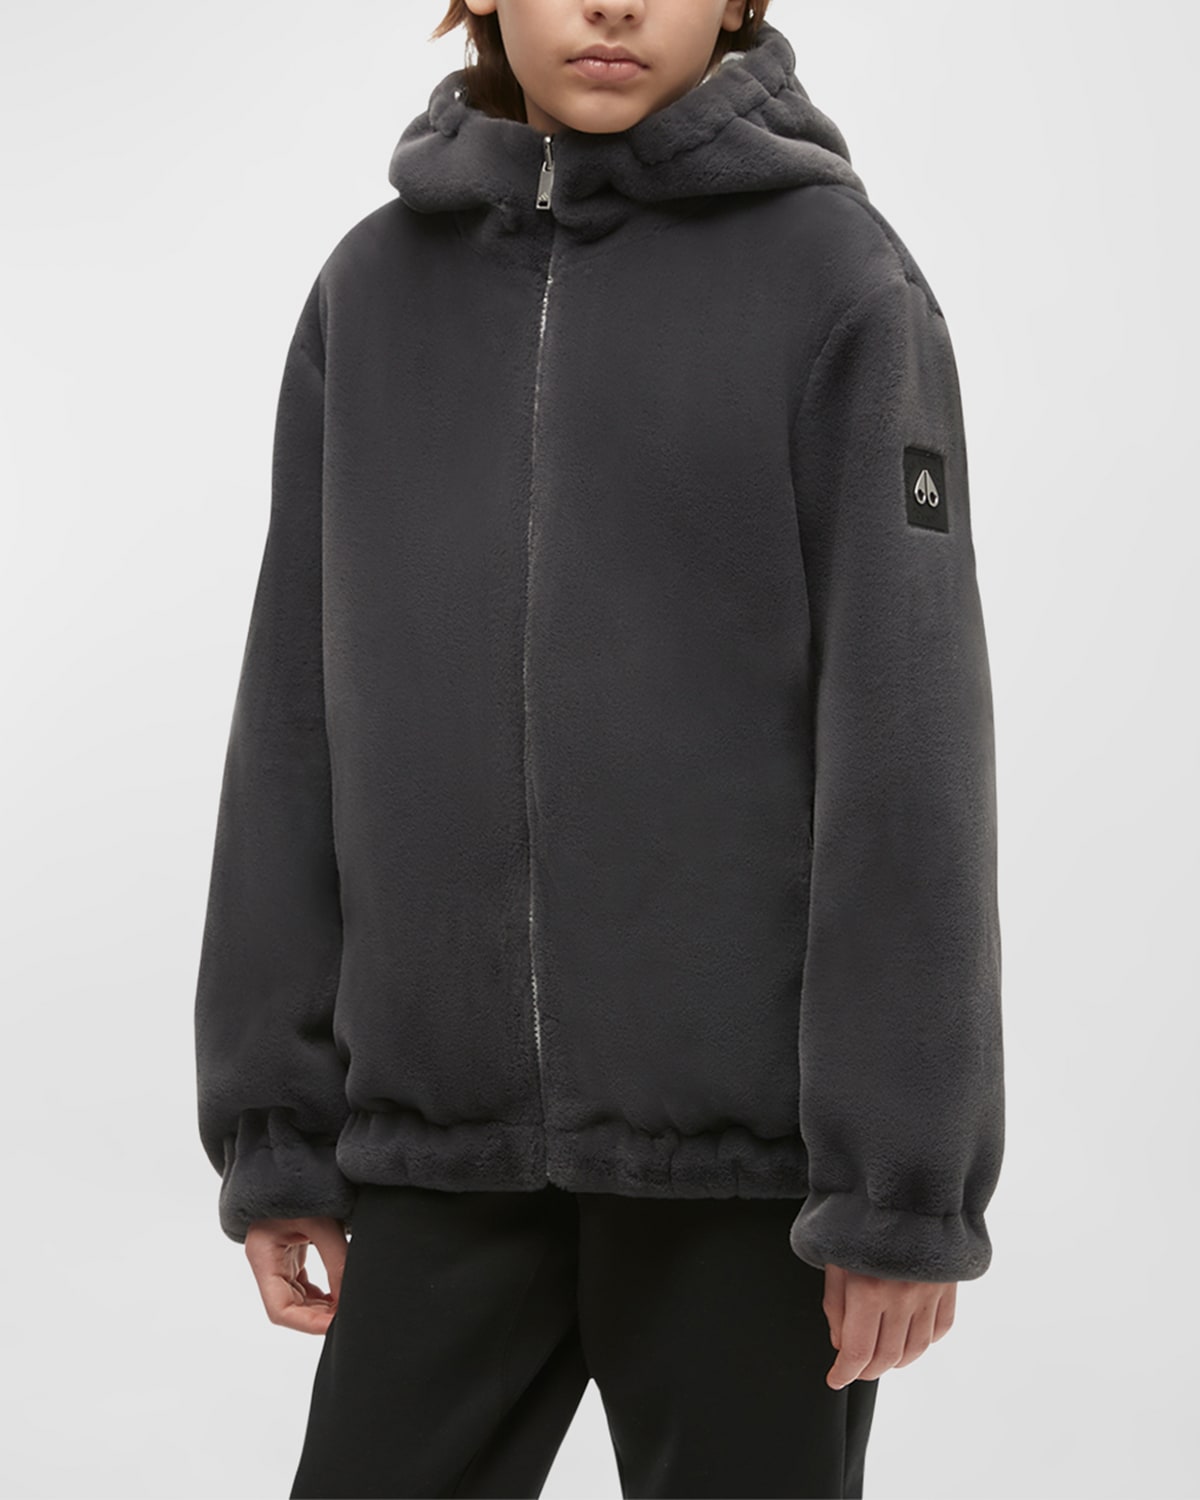 Kid's Simcoe Reversible Faux Fur Jacket, Size XS-XL